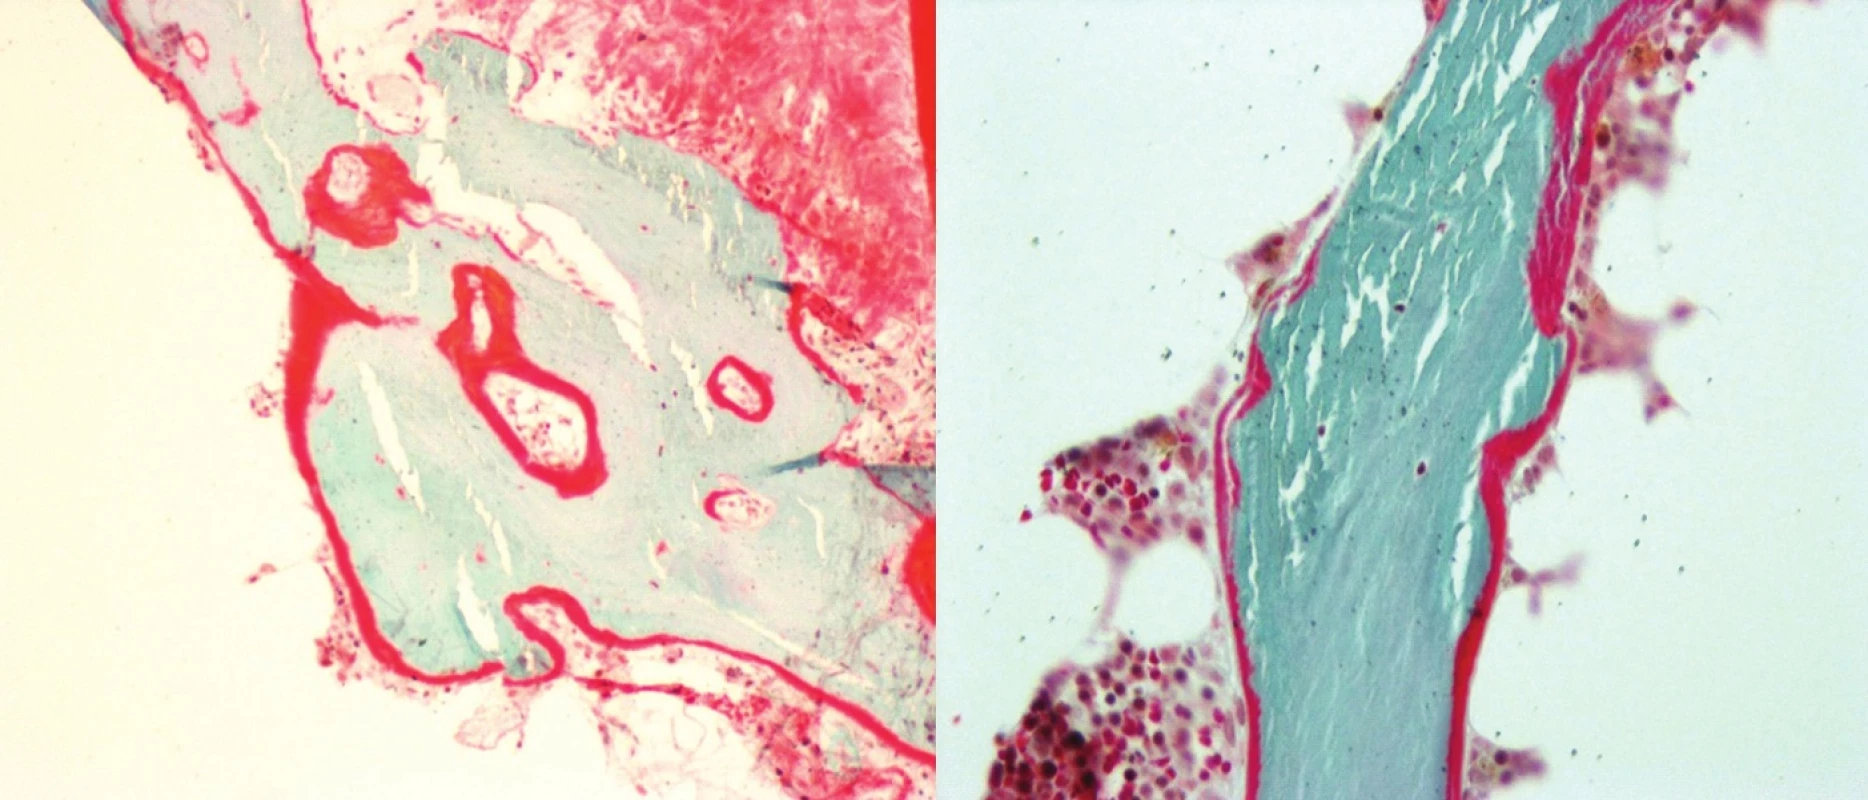 Histomorfometrie kostní tkáně (Goldner 10x, osteoid červeně, kostní trámce modře)